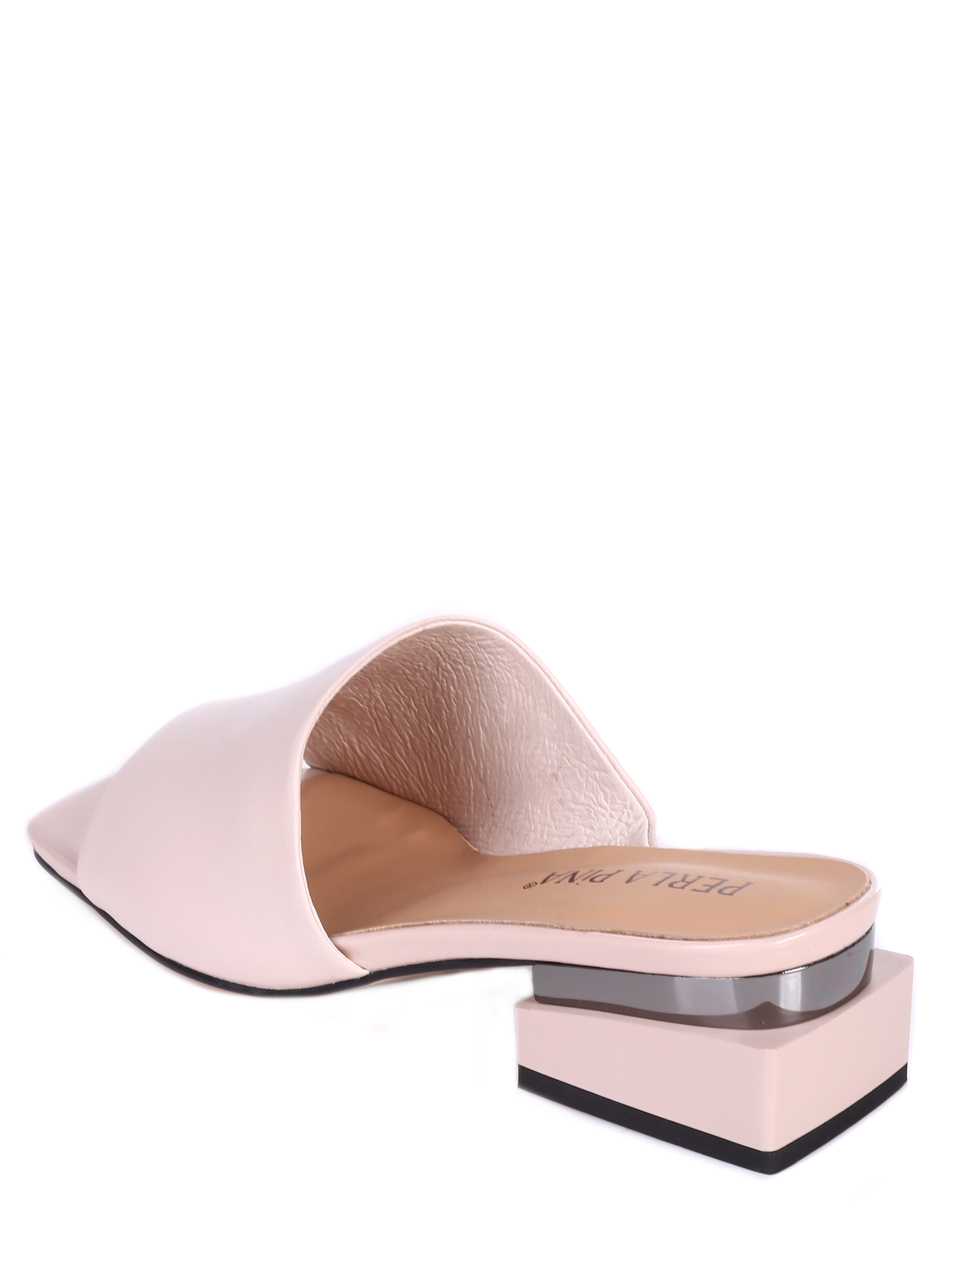 Ежедневни дамски чехли от естествена кожа в розово T27-4 pink